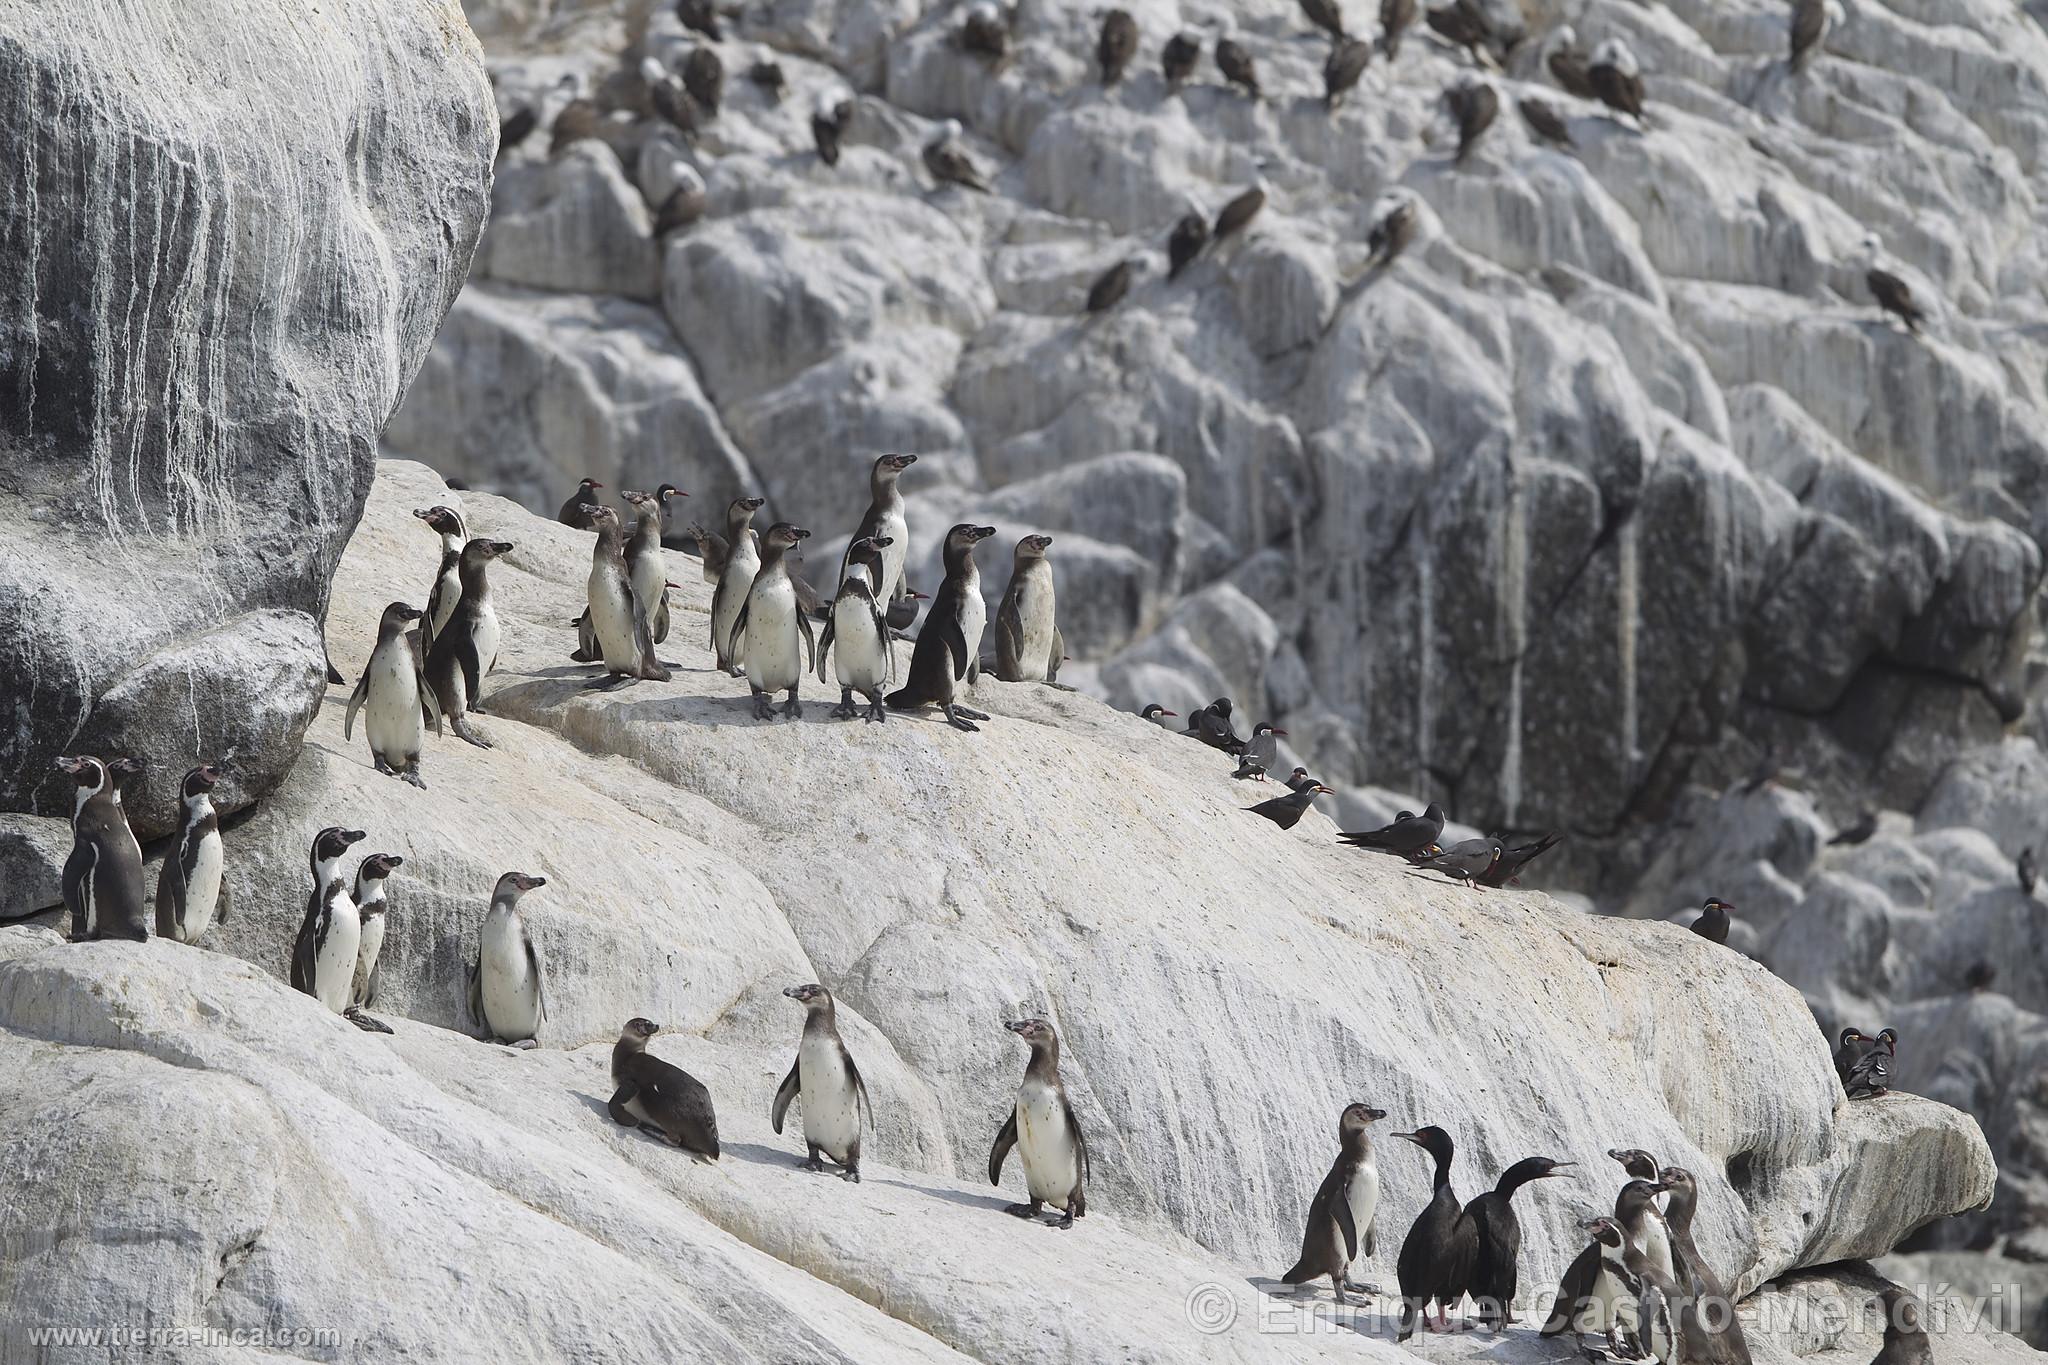 Pinginos de Humbolt en la isla de Asia